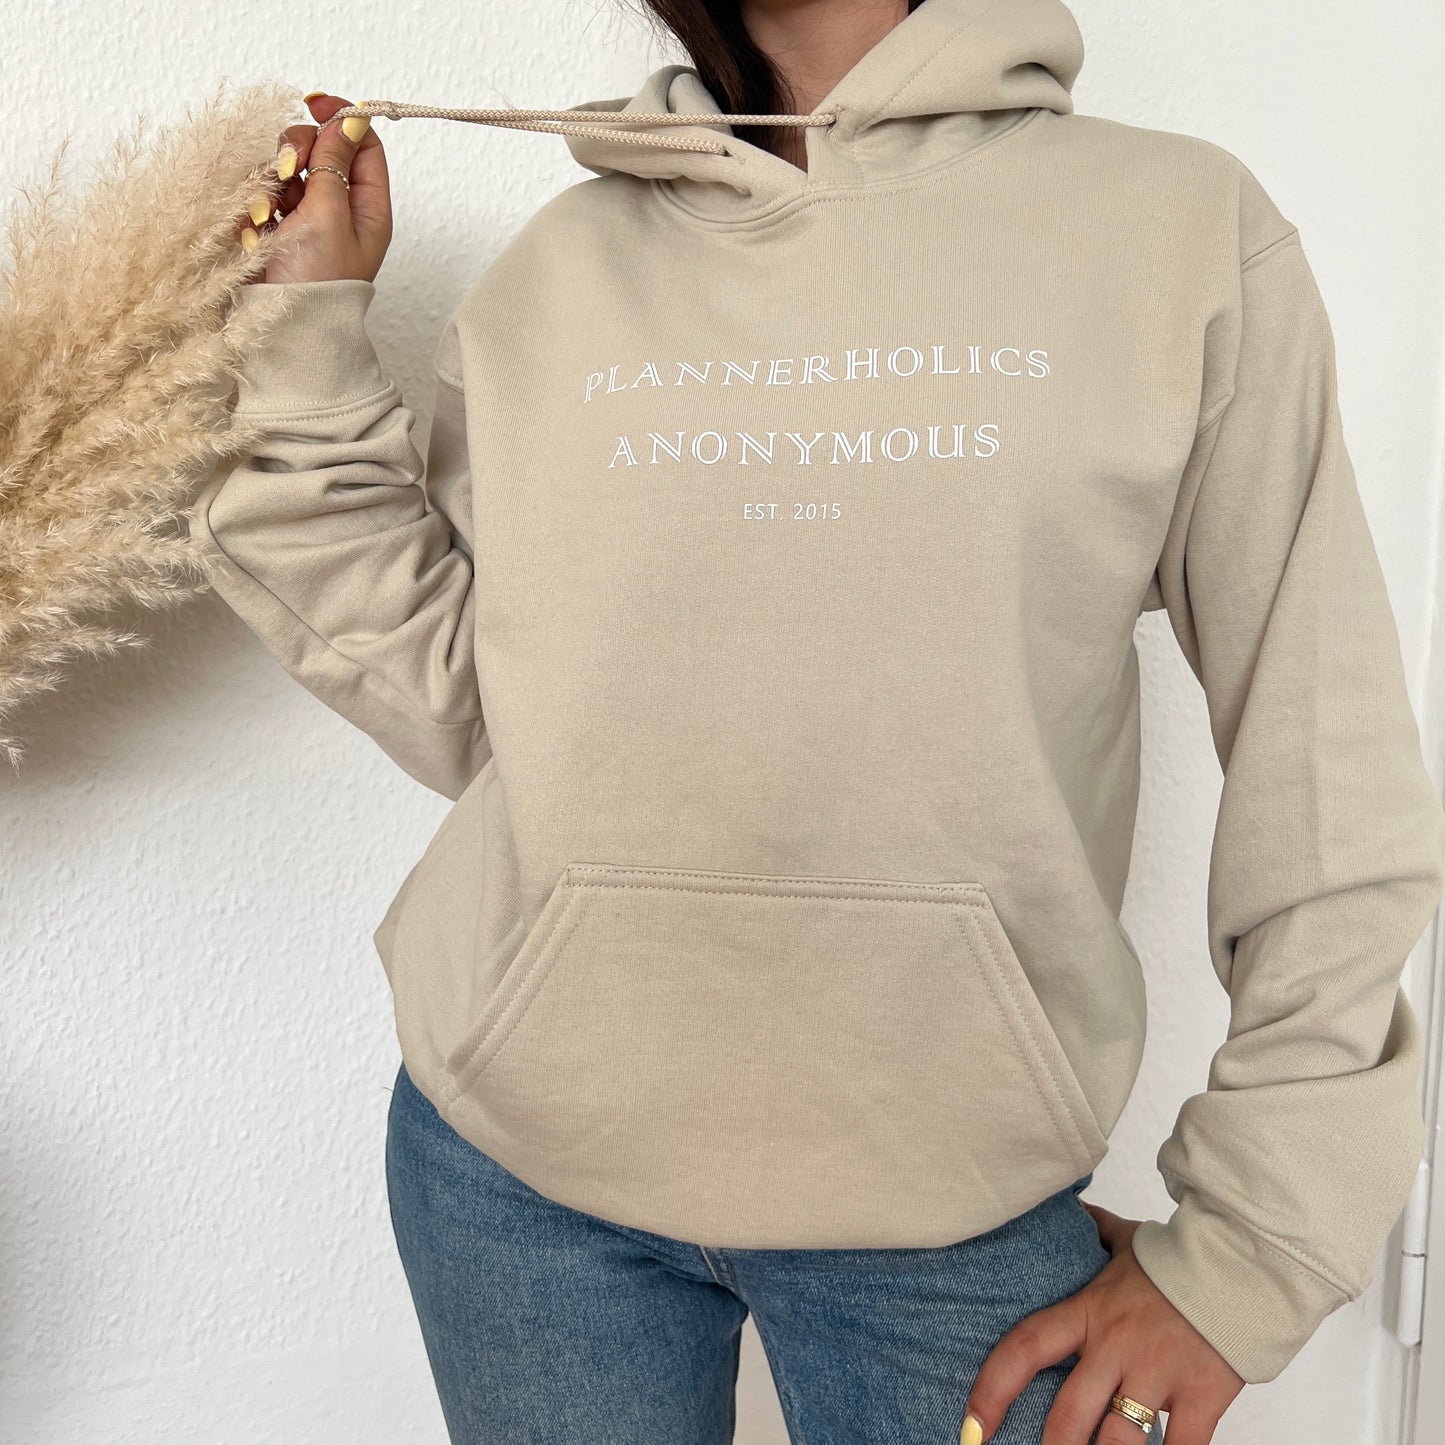 „Plannerholics Anonymous est. (benutzerdefiniertes Jahr)“ Sweatshirt/Hoodie • Wählen Sie Ihre eigenen Farben • Planner-Kollektion